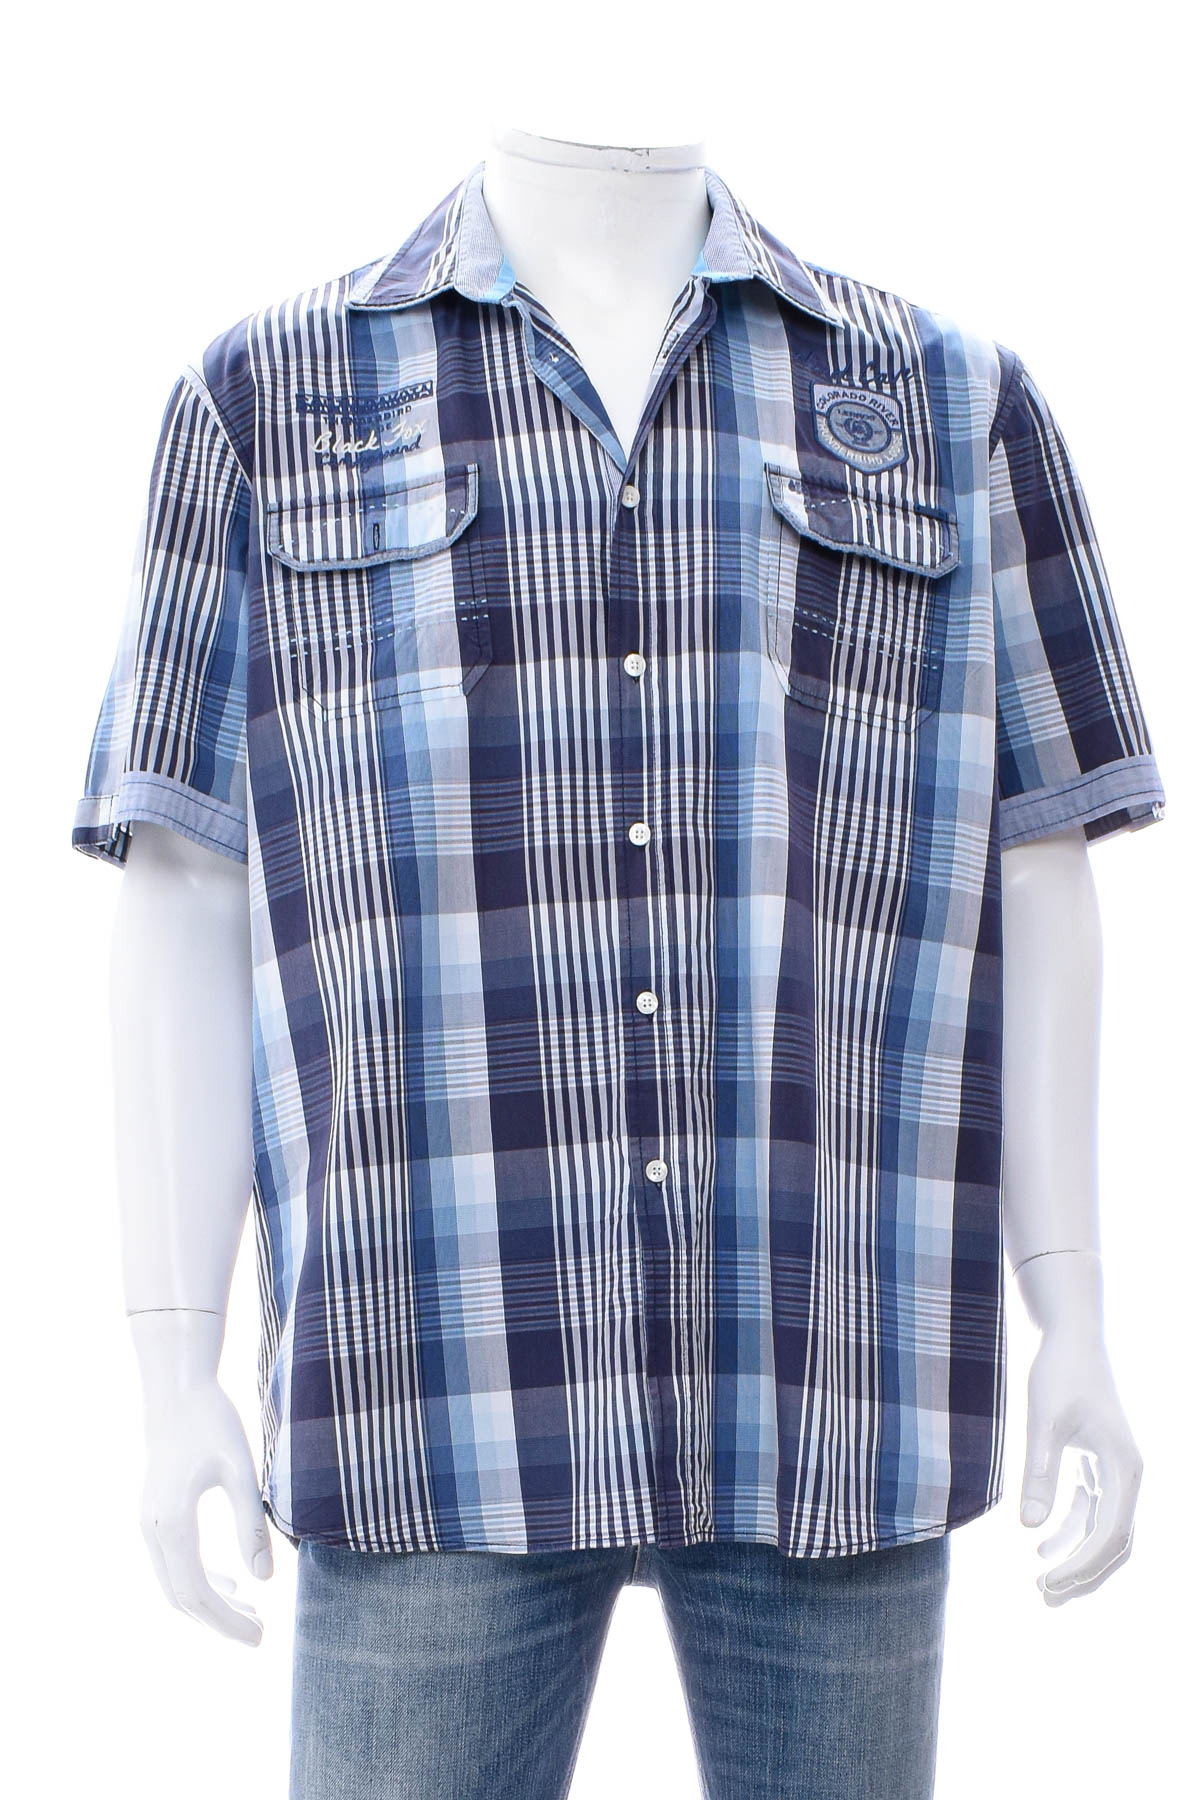 Ανδρικό πουκάμισο - Lerros - 0